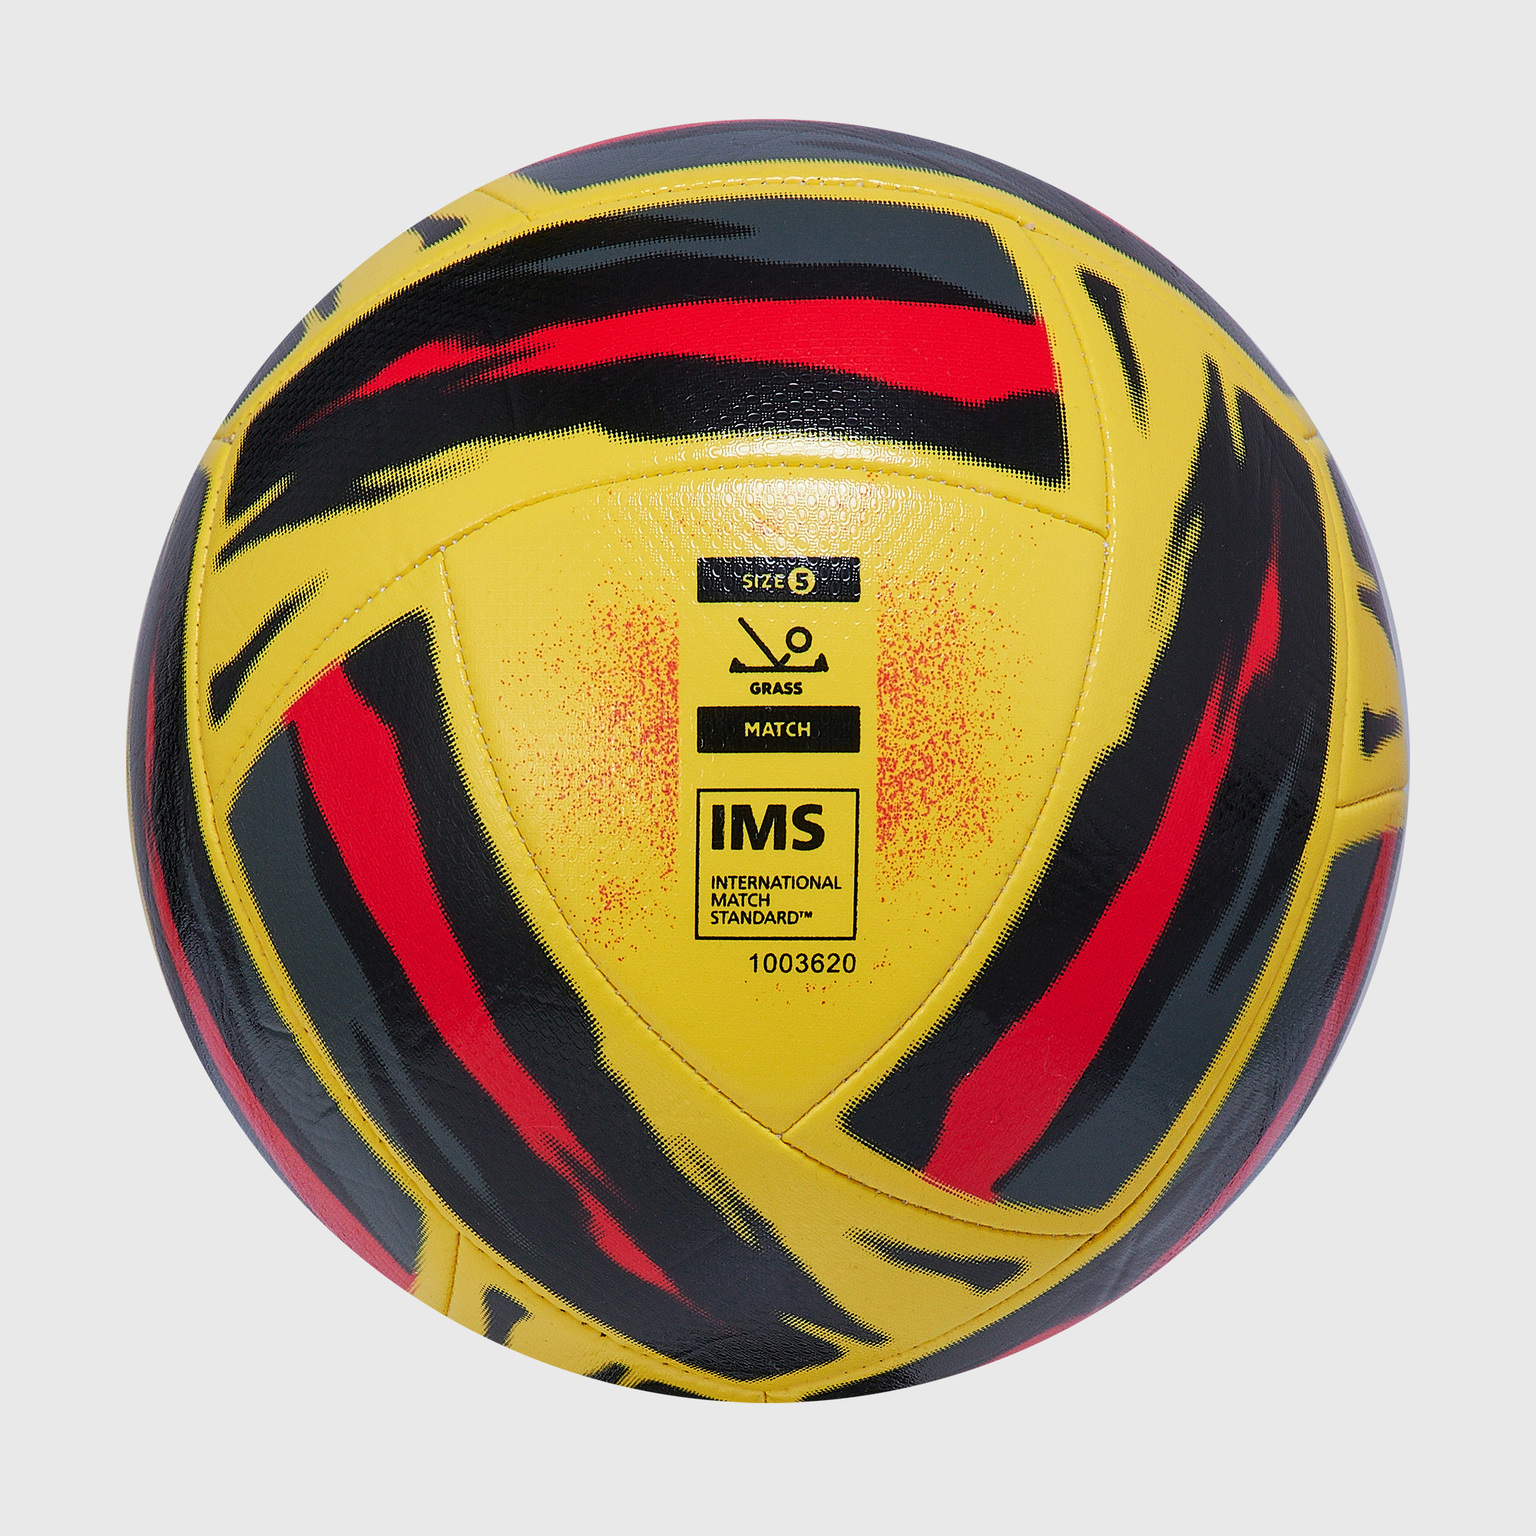 Футбольный мяч Umbro Neo Swerve 21079U-KRW